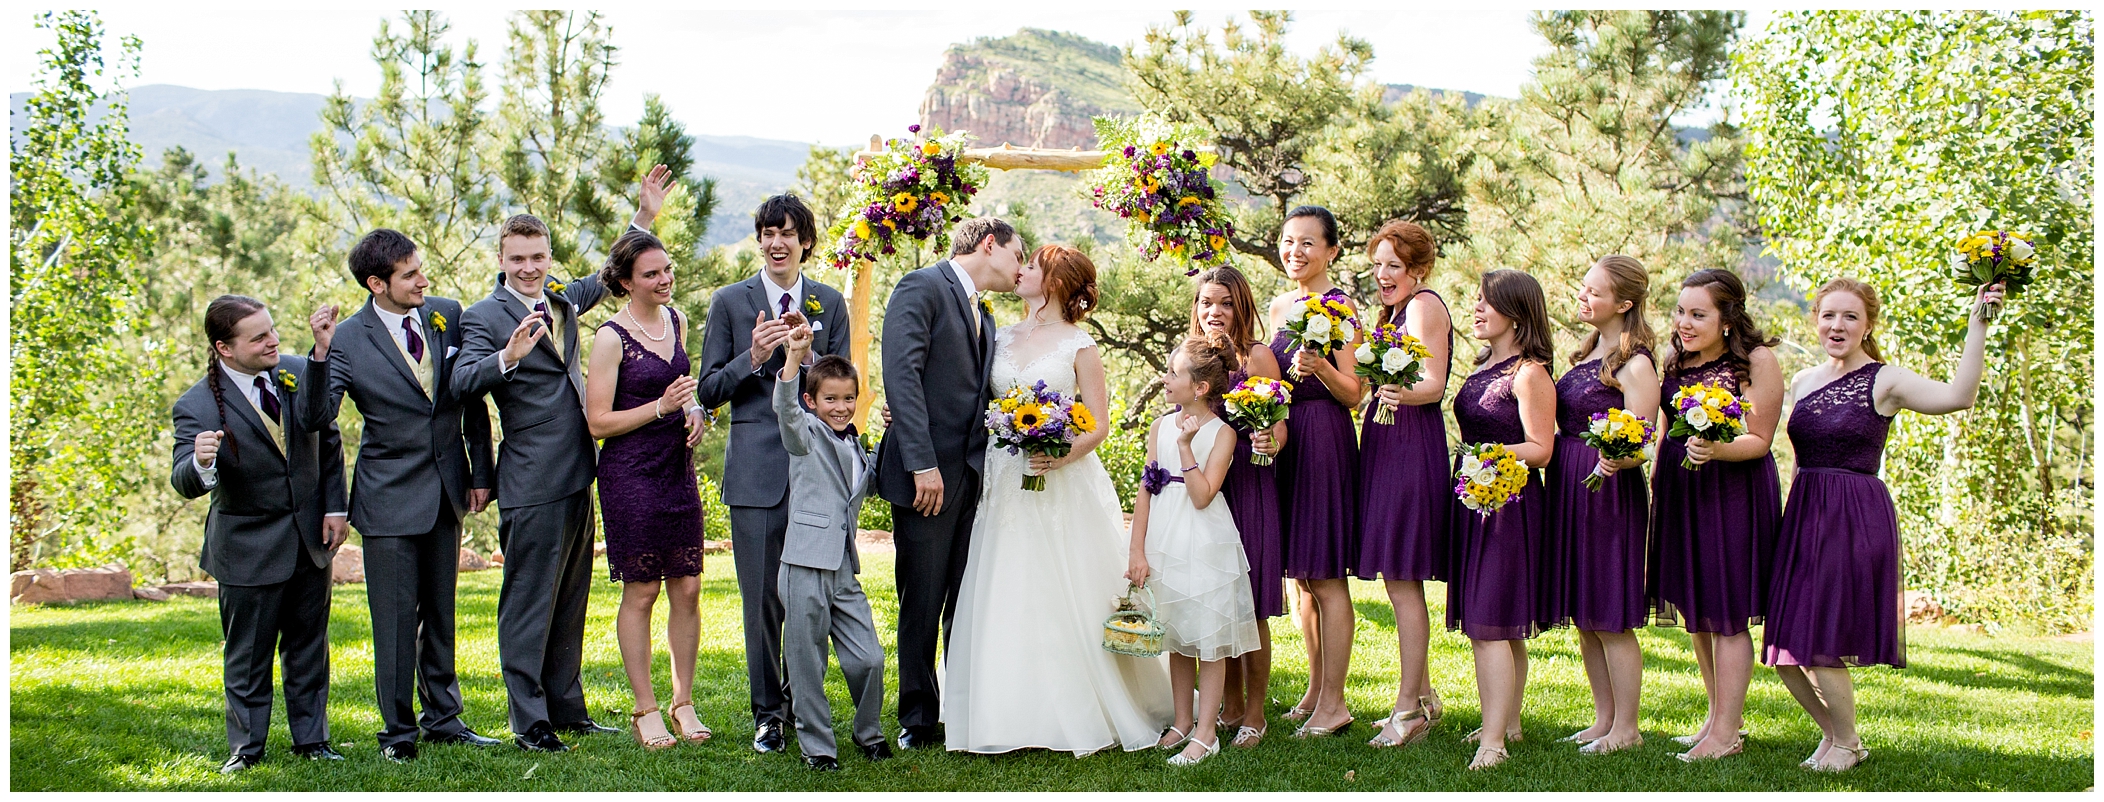 Colorado outdoor wedding photos 